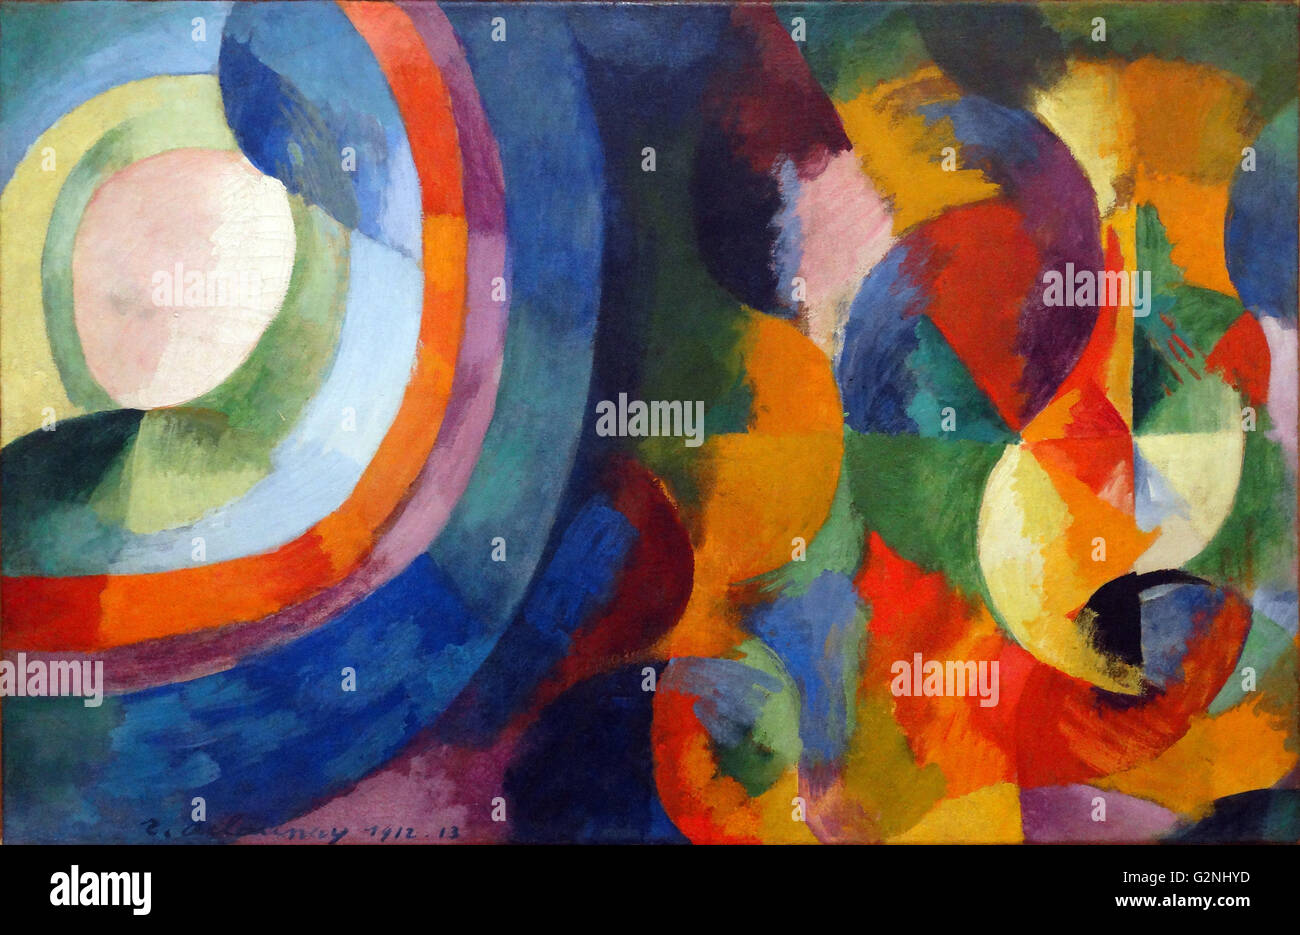 Las formas circulares, el Sol, la Luna por Robert Delaunay (1885-1941) fue un artista francés, quien, con su esposa Sonia Delaunay y otros, cofundó el movimiento del arte El Orfismo, destaca por su uso de colores fuertes y formas geométricas. Sus obras posteriores fueron más abstracto, con reminiscencias de Paul Klee. Foto de stock